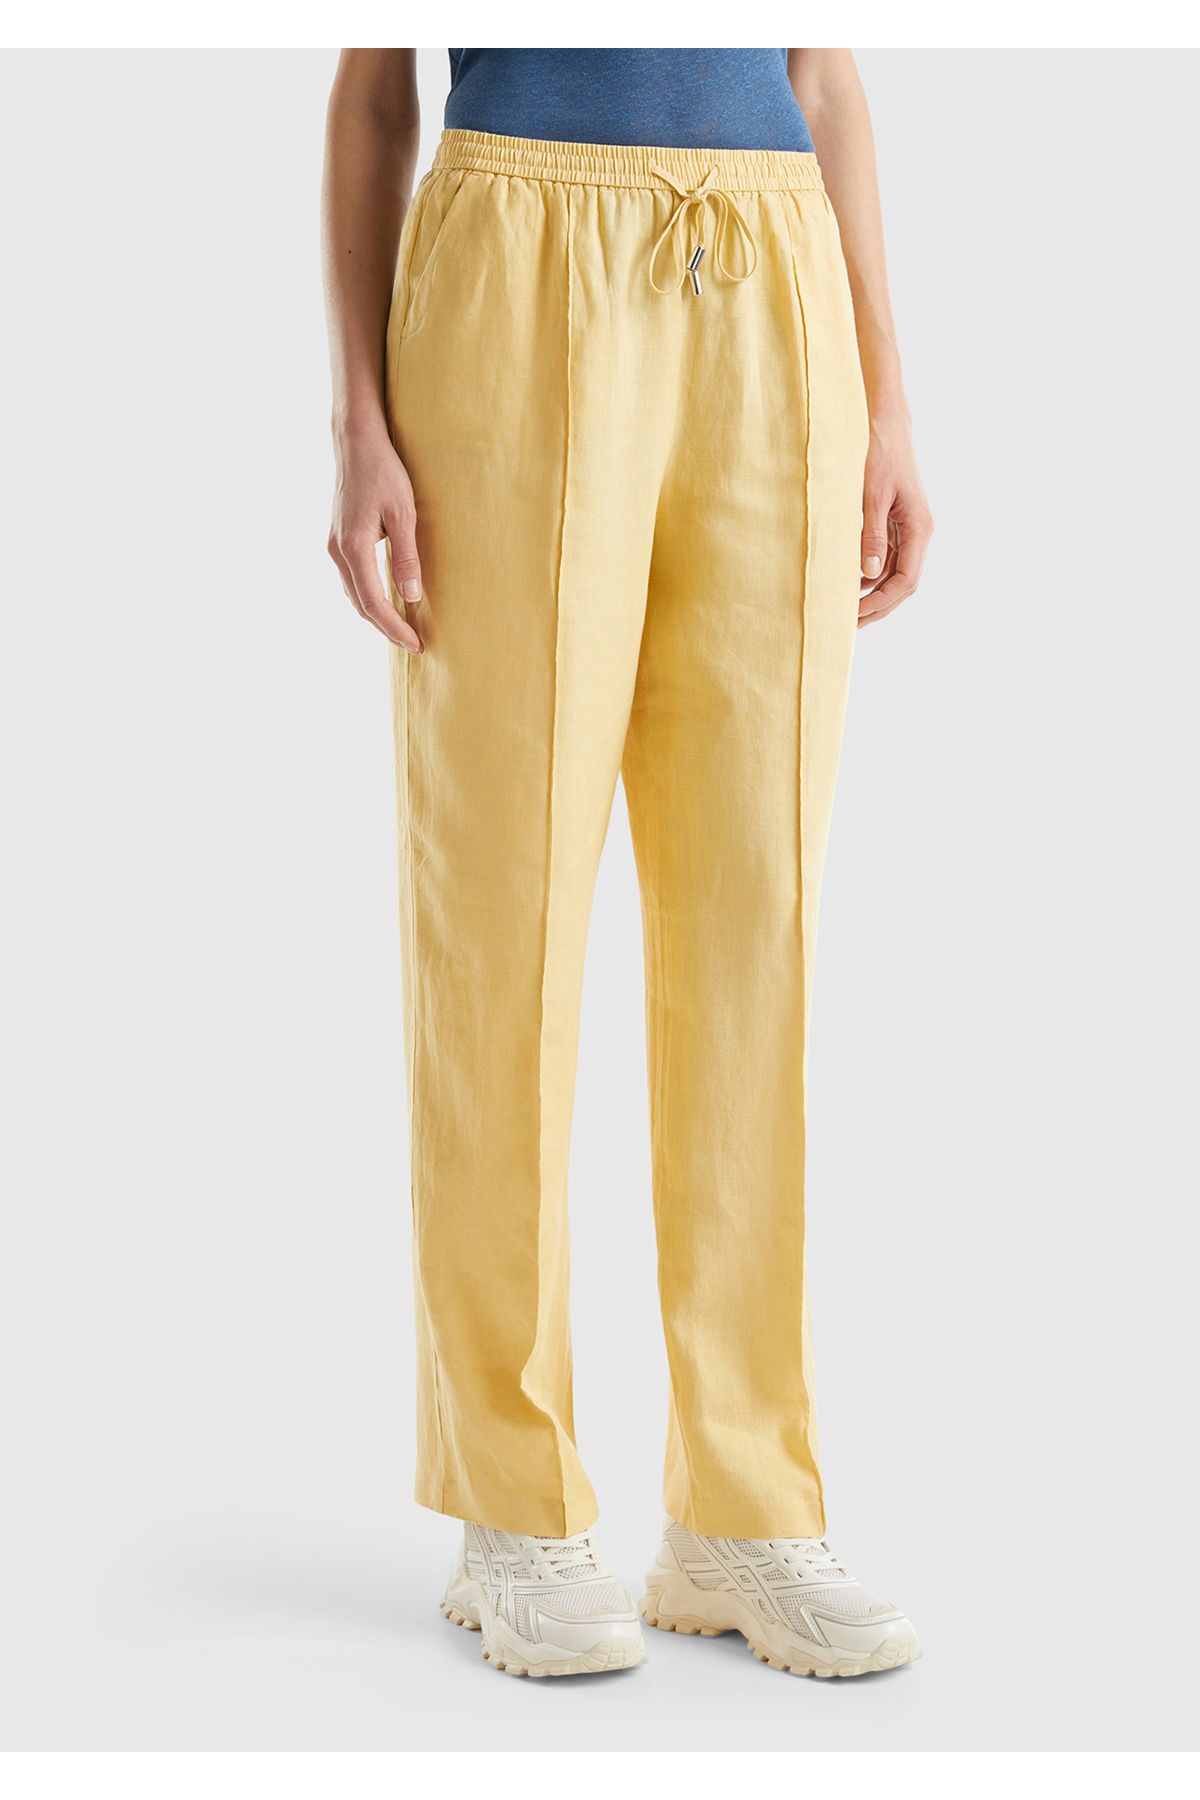 United Colors of Benetton Kadın Açık Sarı %100 Keten Beli Lastikli Rahat Kalıp Pantolon